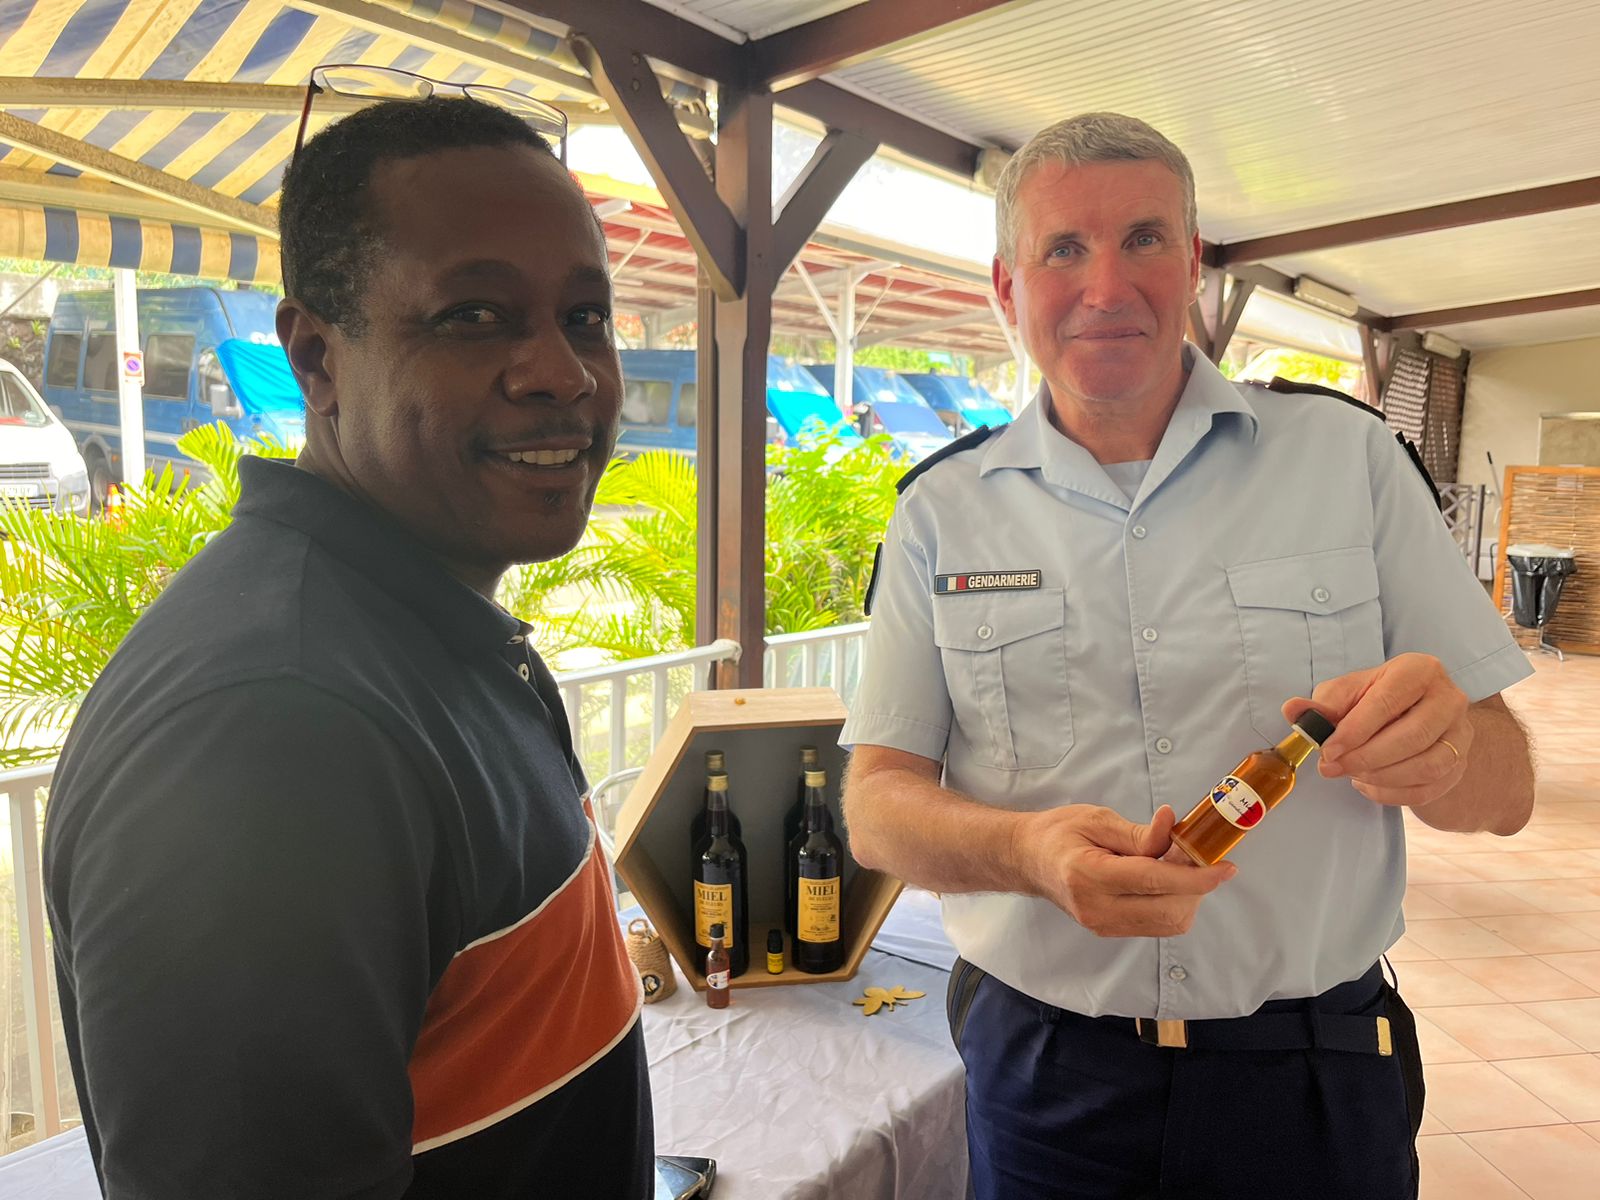     « Opération miel » réussie pour la gendarmerie de Martinique

